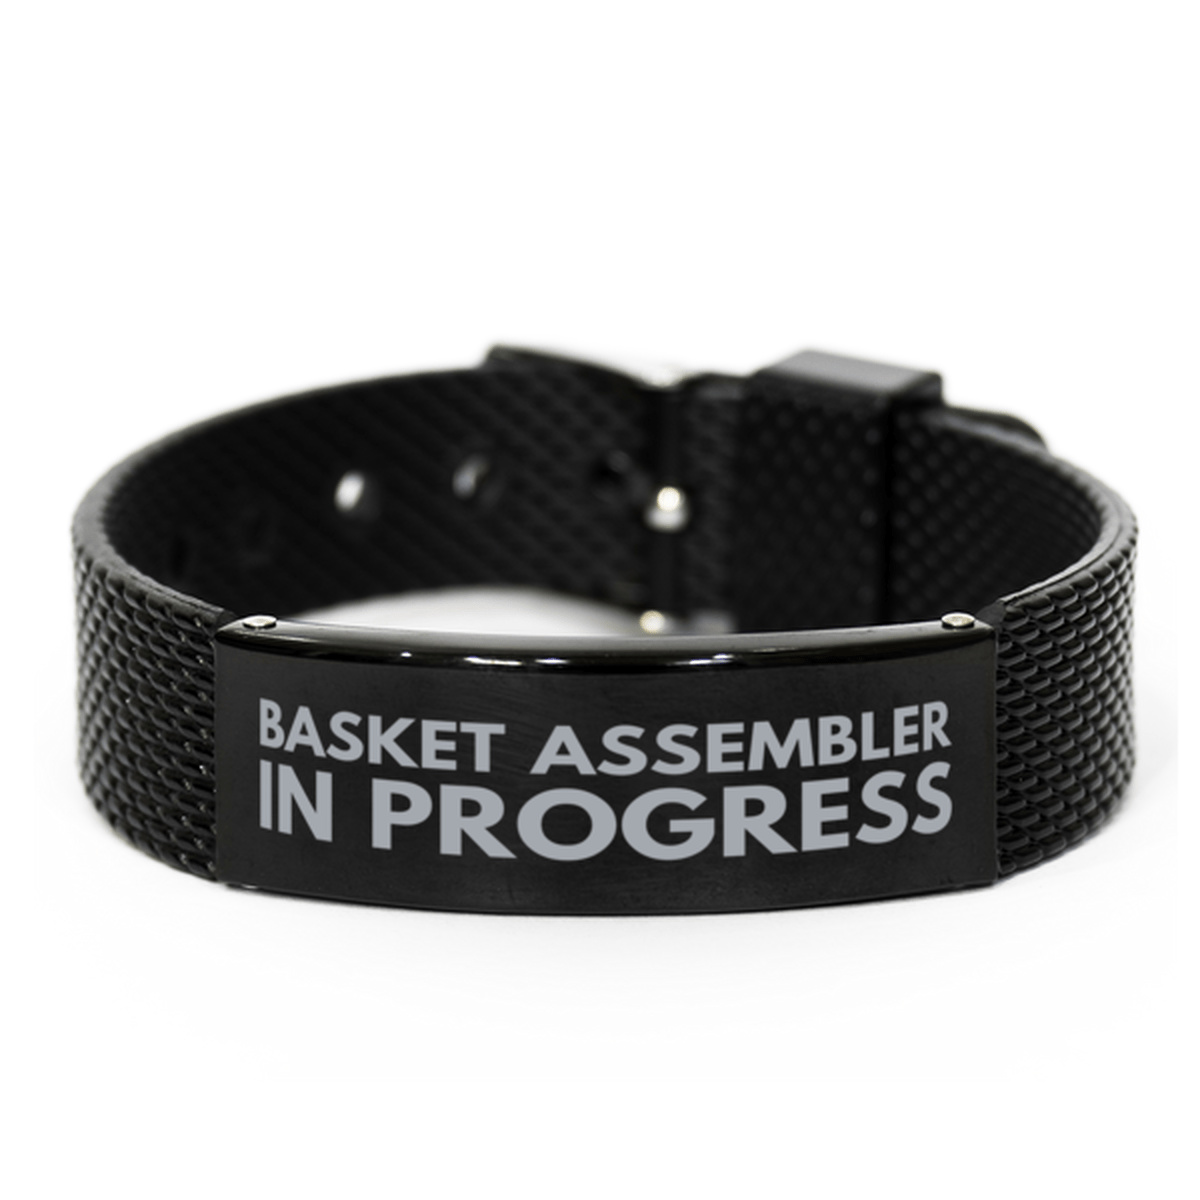 Inspirational Basket Assembler Black Shark Mesh Bracelet, Basket Assembler In Progress, Best Graduation Gifts for Students